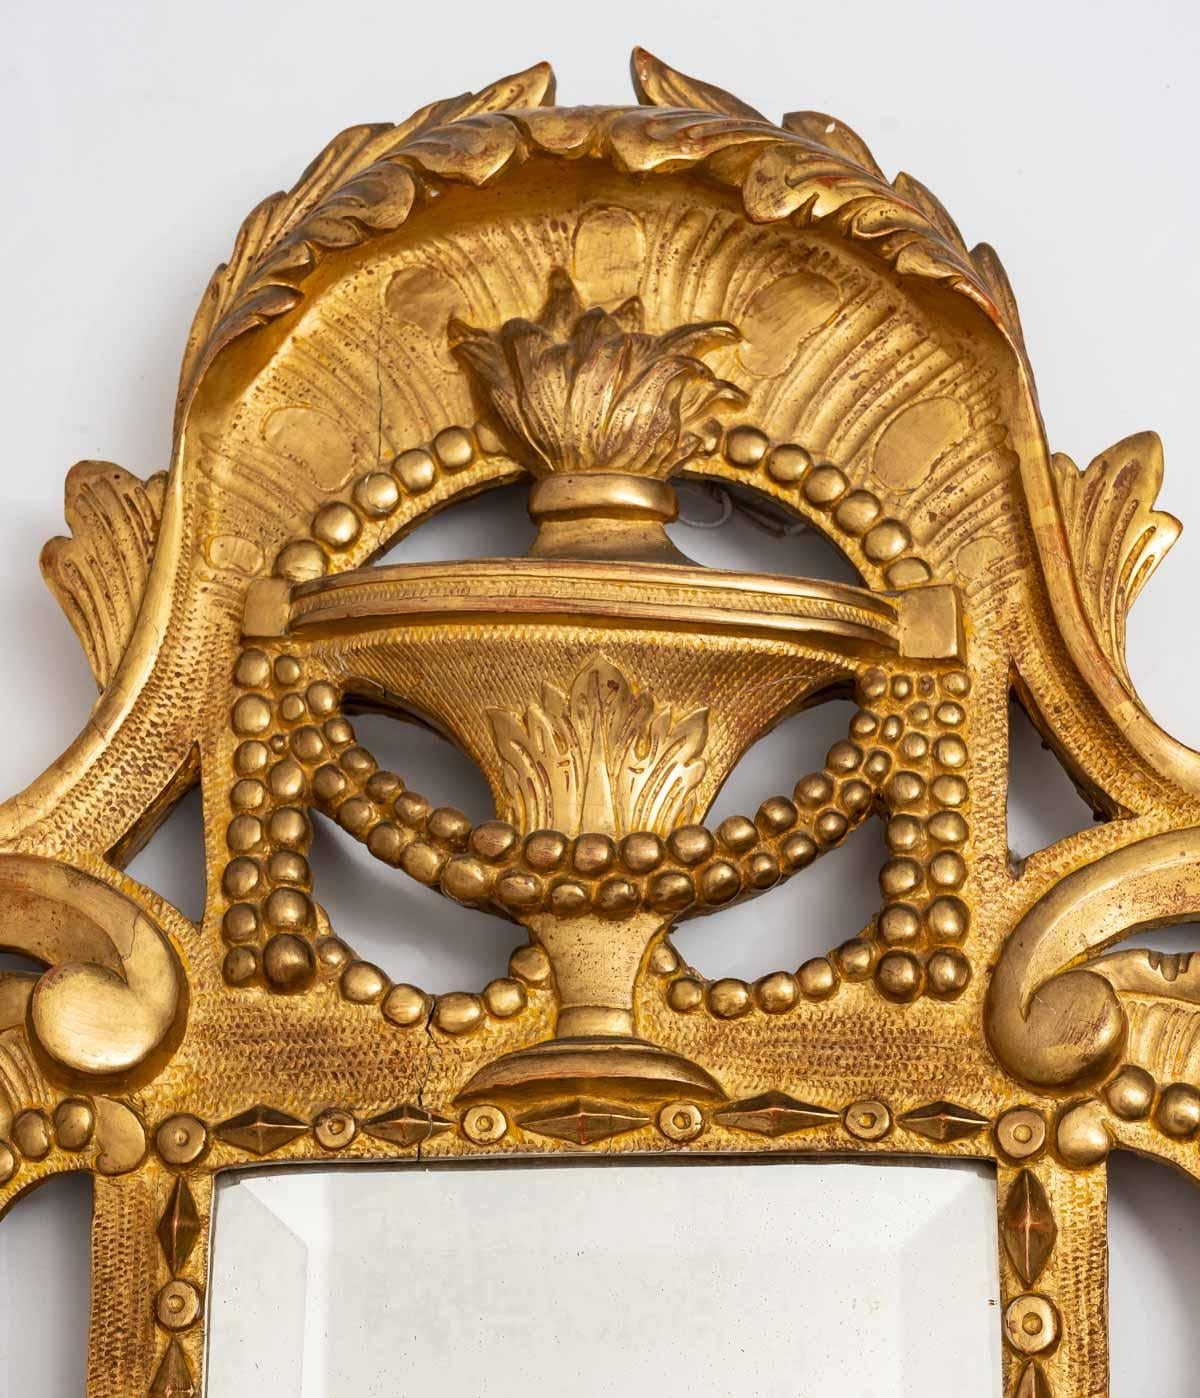 Rare miroir de chambre à coucher en bois doré (parfois appelé 